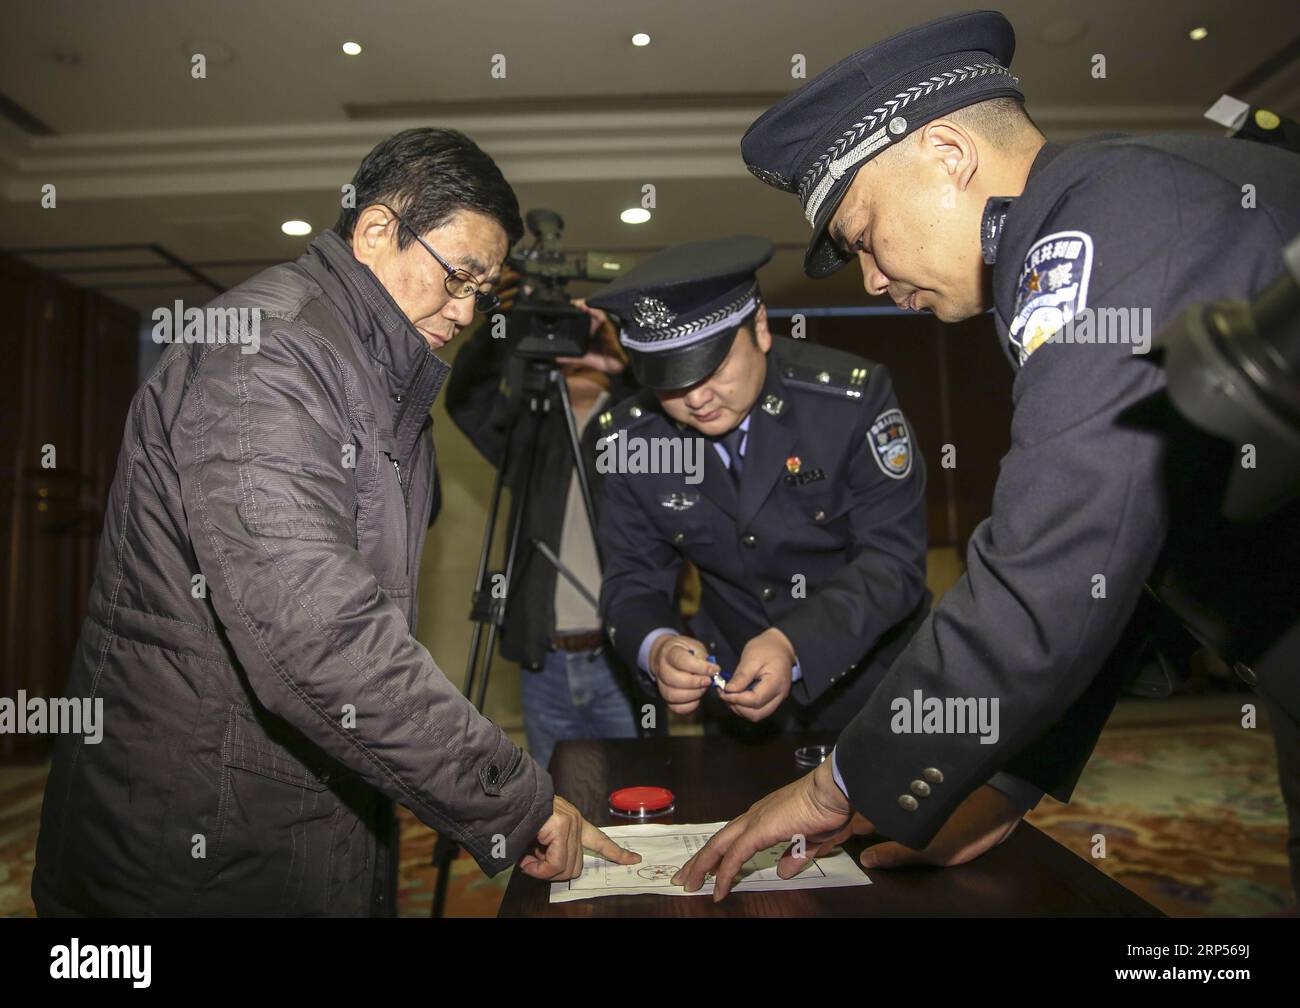 (181130) -- PÉKIN, 30 nov. 2018 (Xinhua) -- Yao Jinqi(L) est escorté par la police à l'aéroport international Capital de Pékin, capitale de la Chine, le 30 novembre 2018. Yao Jinqi, un suspect de crime de service et ancien chef adjoint du comté de Xinchang dans la province du Zhejiang de l est de la Chine, a été extradé vendredi vers la Chine depuis la Bulgarie. Yao, qui a fui à l'étranger en décembre 2005, est devenu le premier ancien fonctionnaire chinois extradé d'un État membre de l'UE. Coordonné par un bureau chargé du rapatriement des fugitifs et du recouvrement des avoirs relevant du groupe central de coordination de la lutte contre la corruption de la Chine, il a également été le premier SUC Banque D'Images